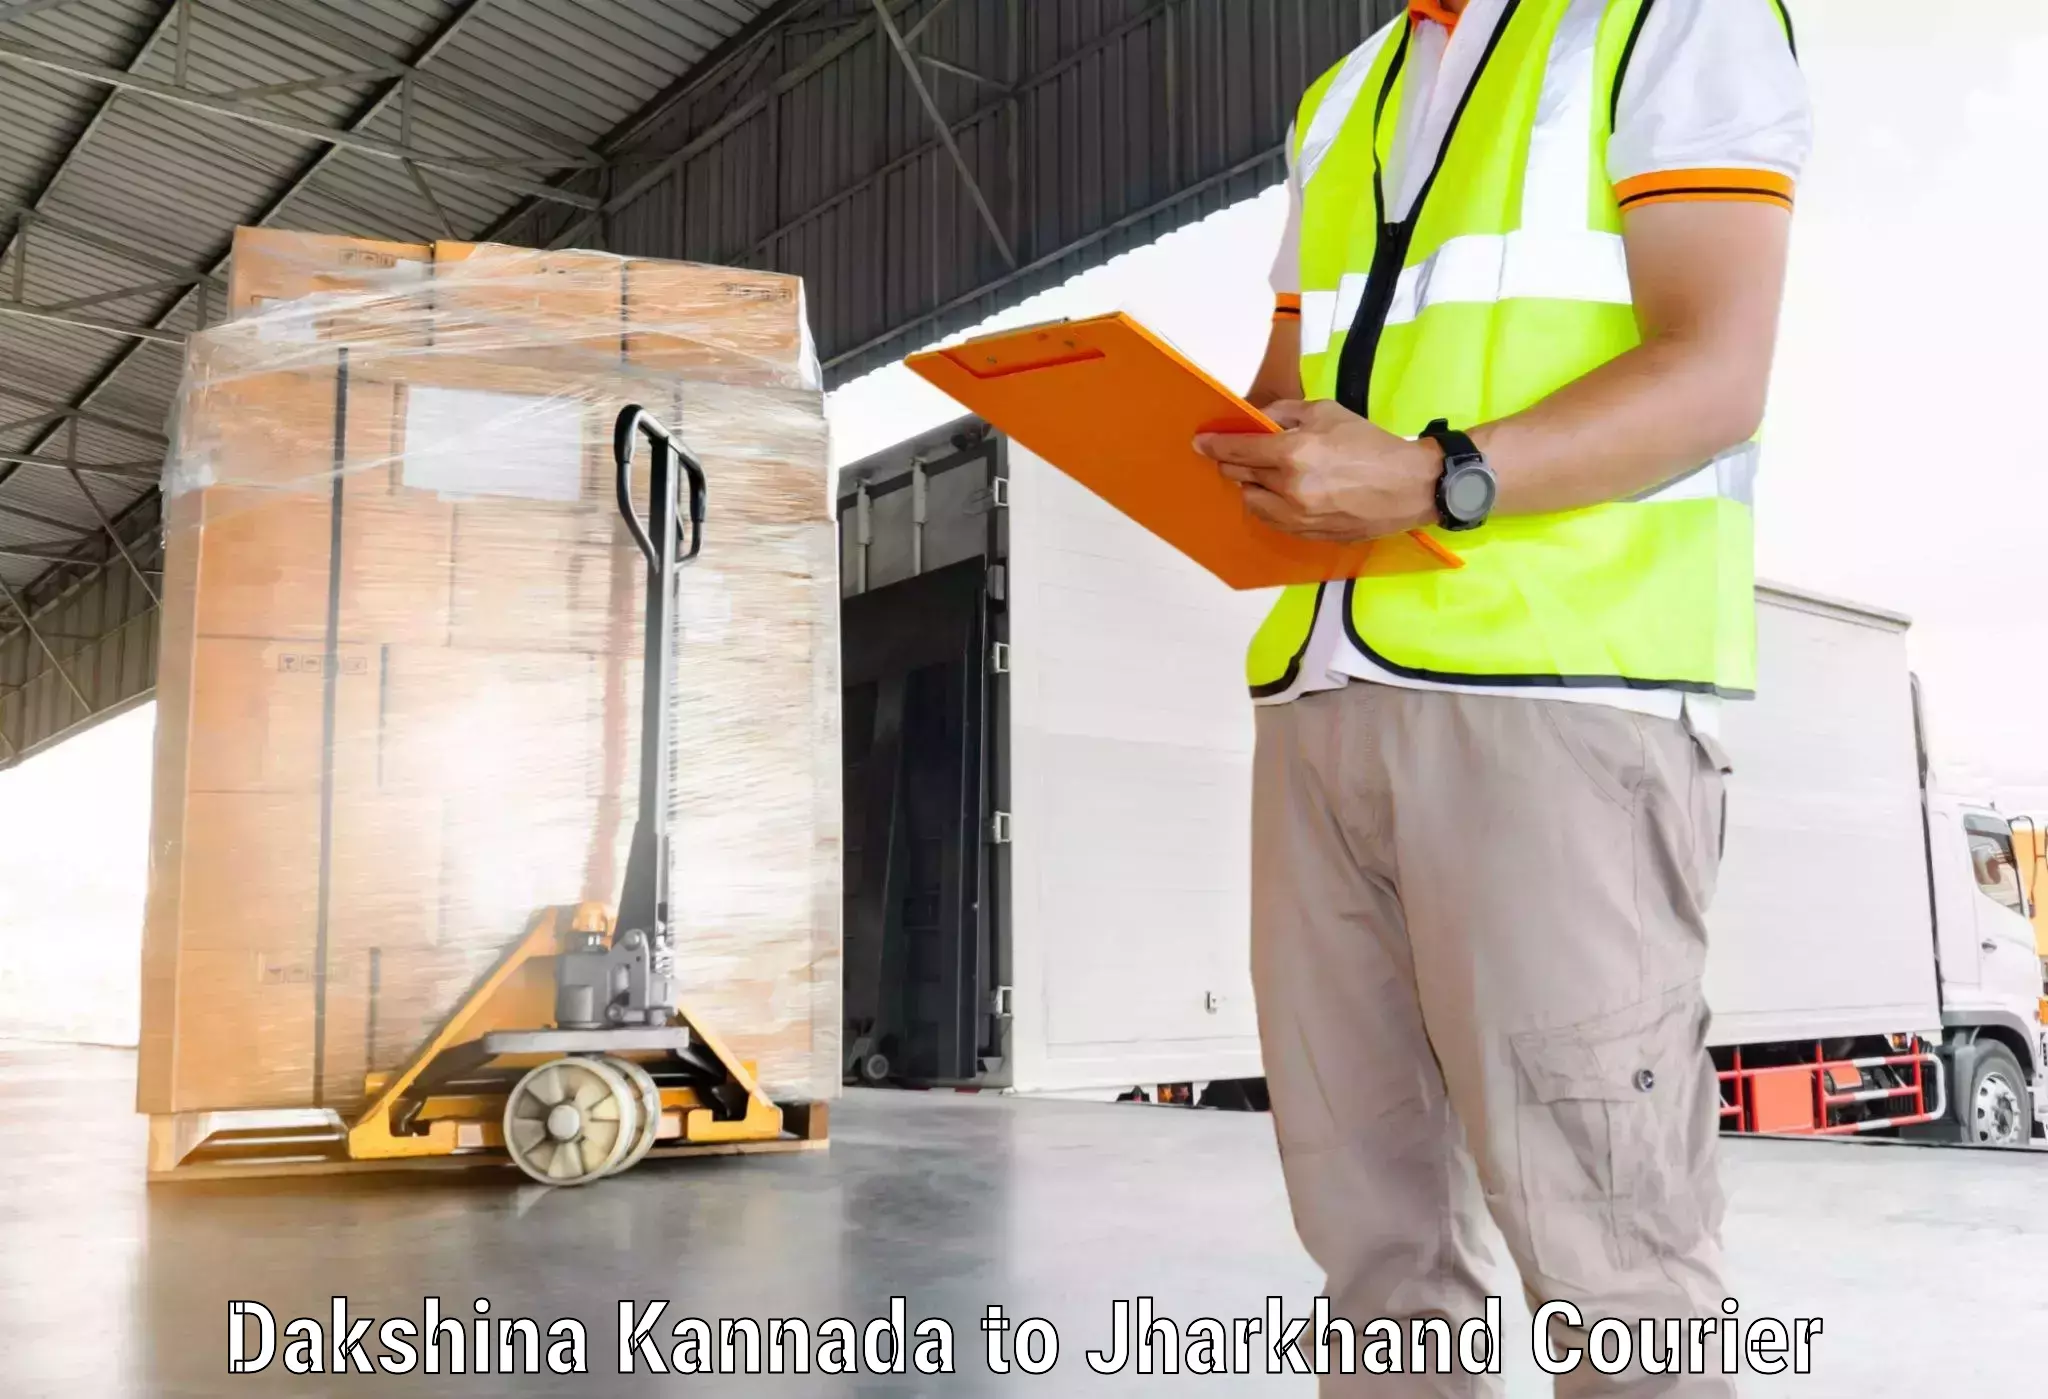 Modern delivery technologies Dakshina Kannada to Barkagaon